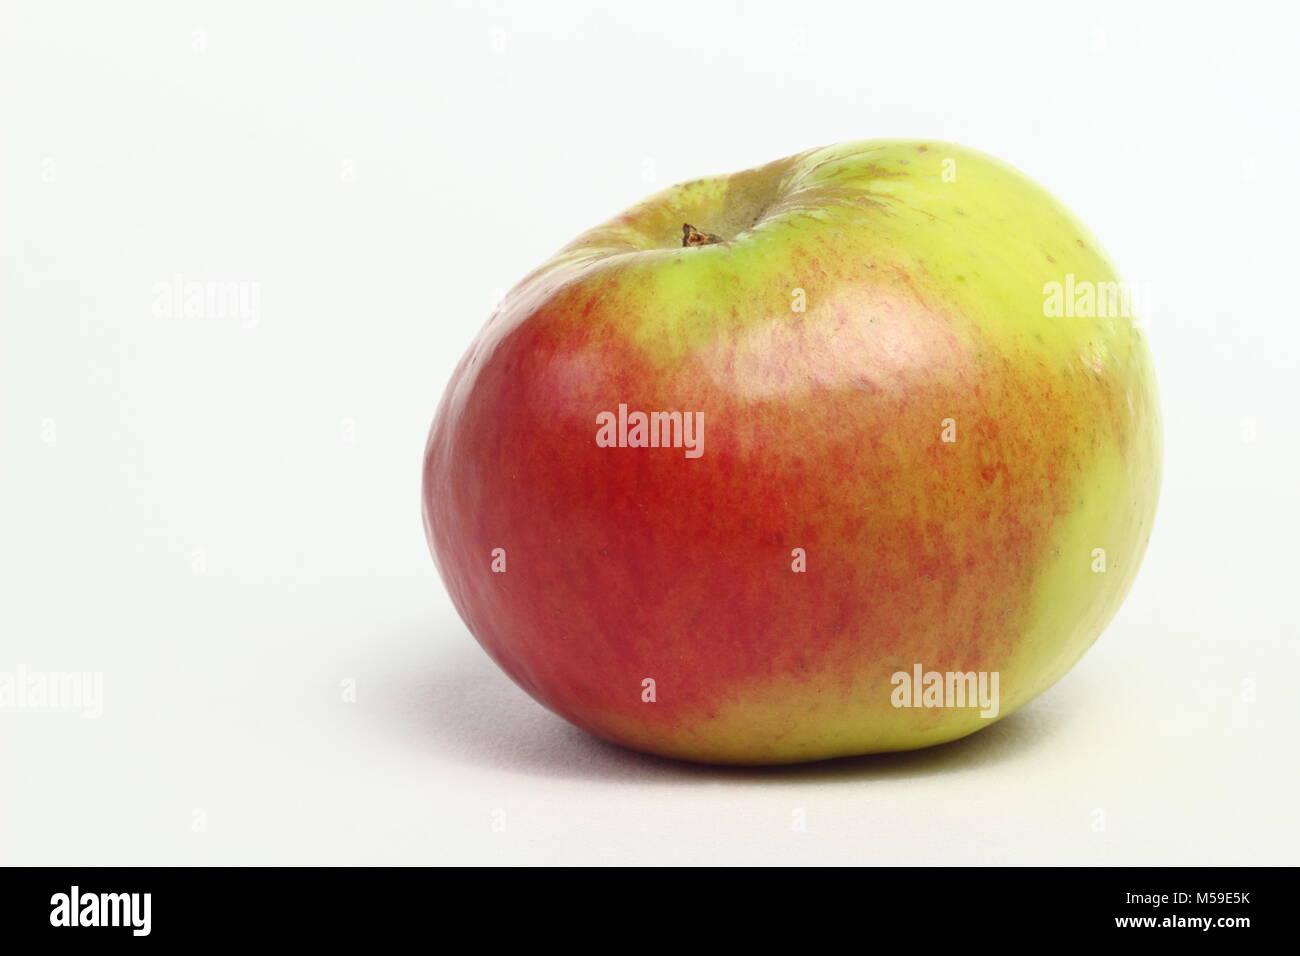 Malus domestica 'Bramleys des semis, une variété de pomme, fond blanc, UK Banque D'Images